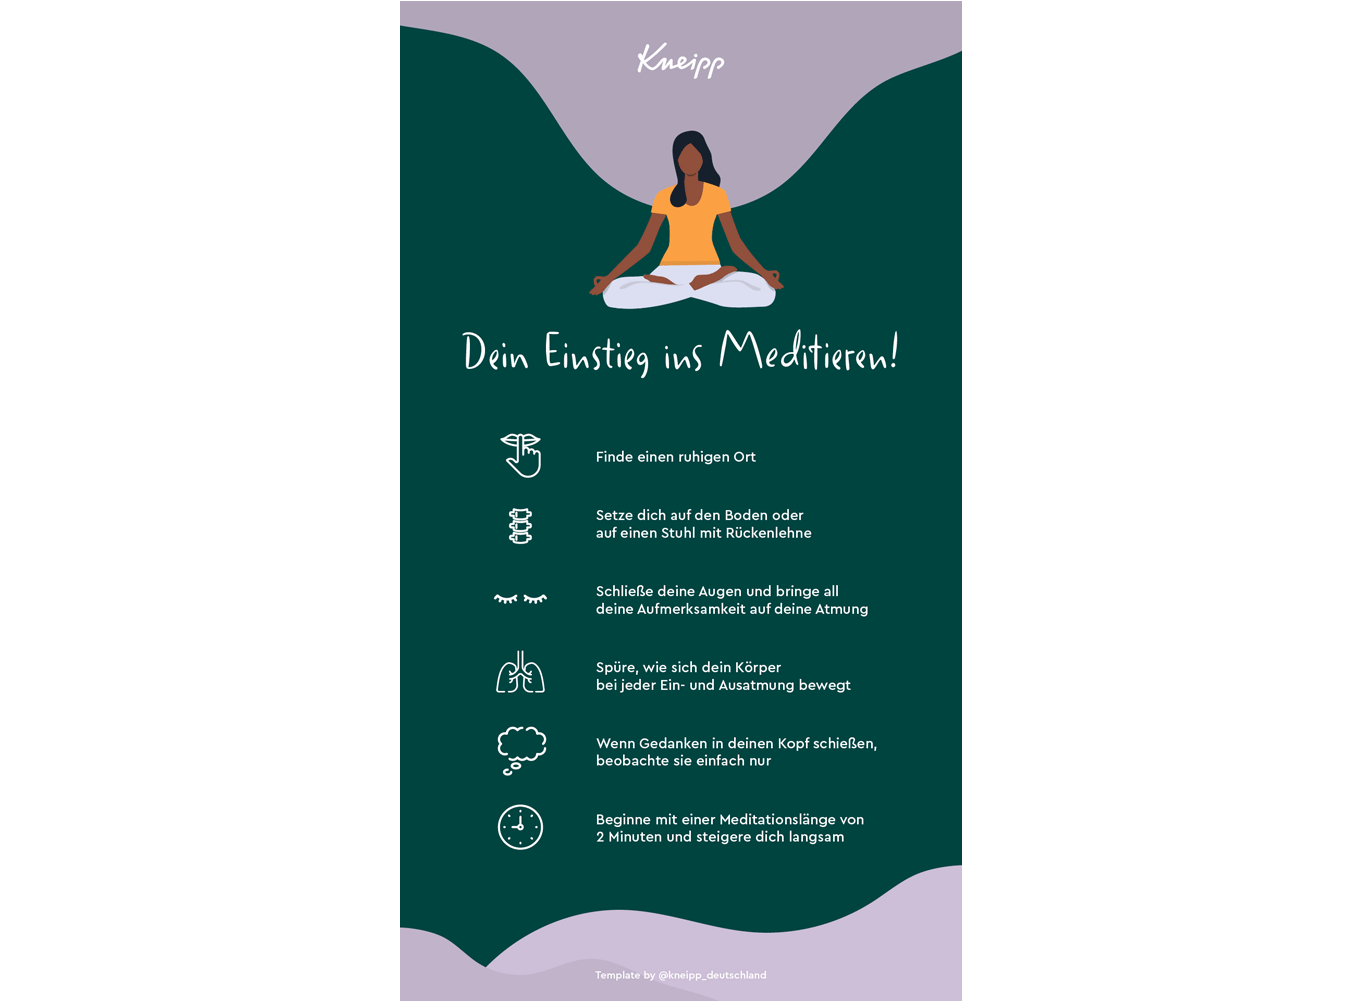 Lista kontrolna medytacji